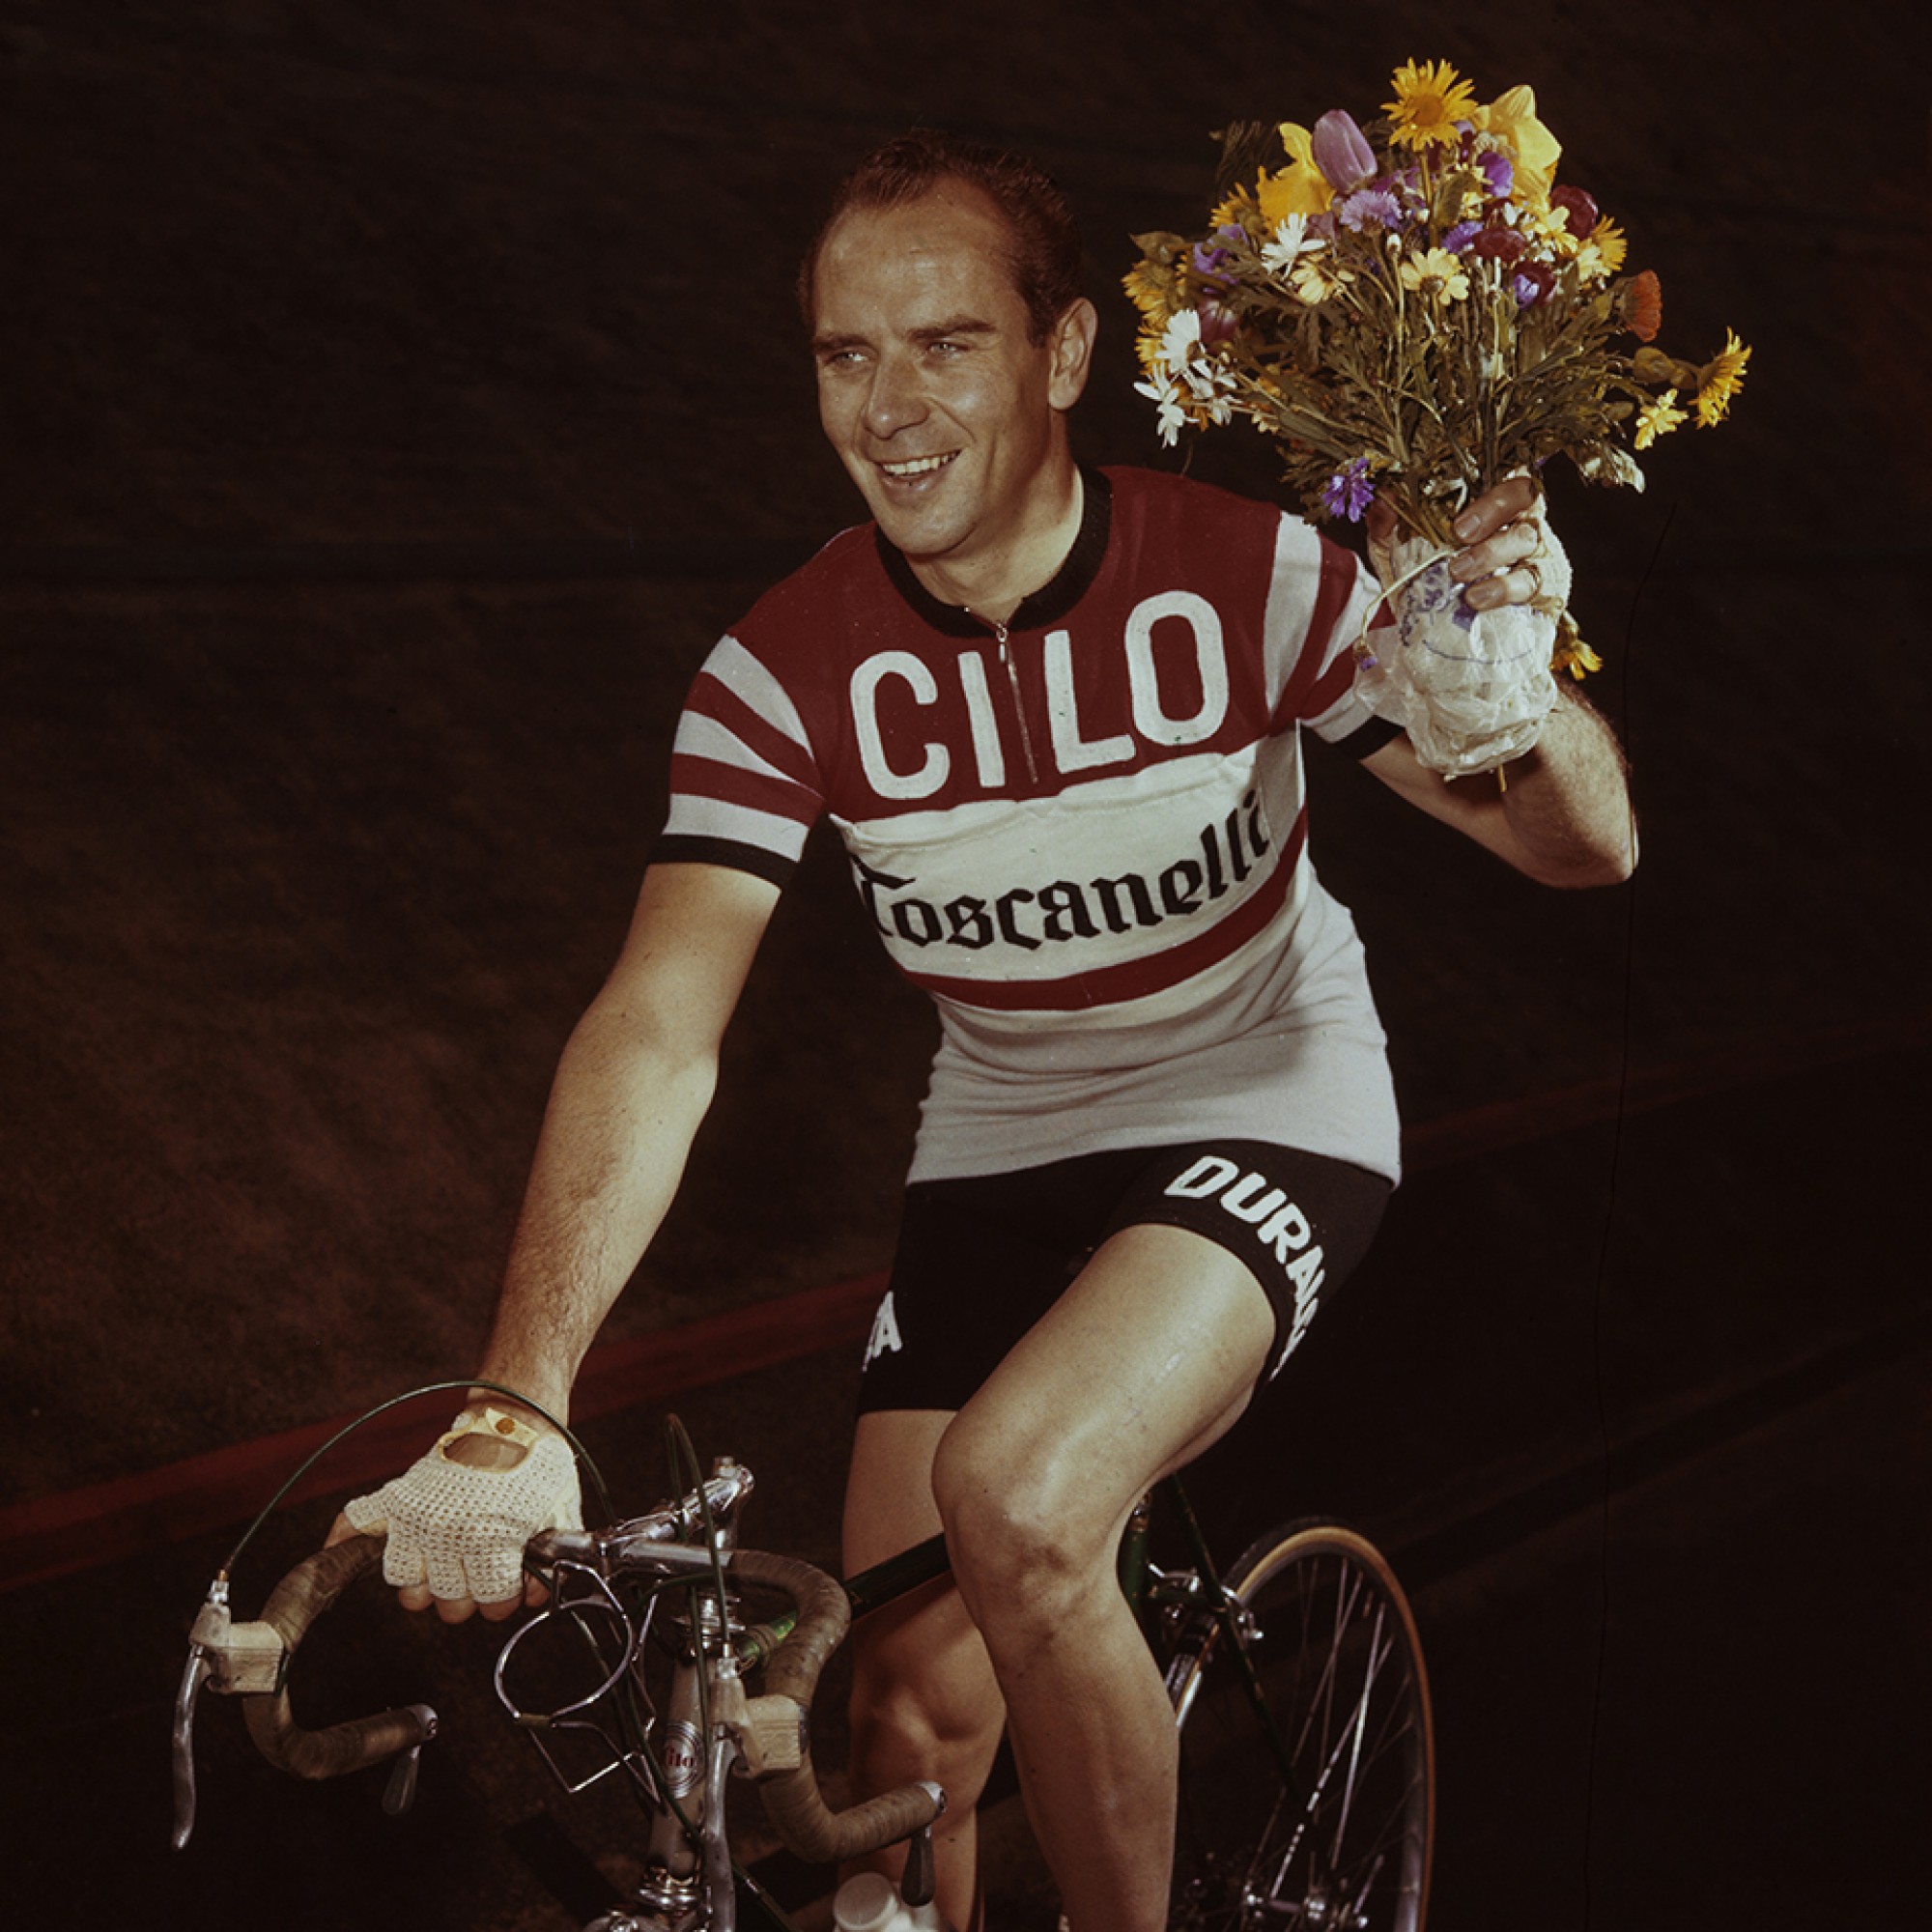 Zwischen 1947 und 1954 gewann Hugo Koblet auf der offenen Rennbahn Oerlikon sämtliche Schweizermeistertitel in der Einerverfolgung. Ein Denkmal beim Rennoval erinnert an den «Pedaleur de Charme».